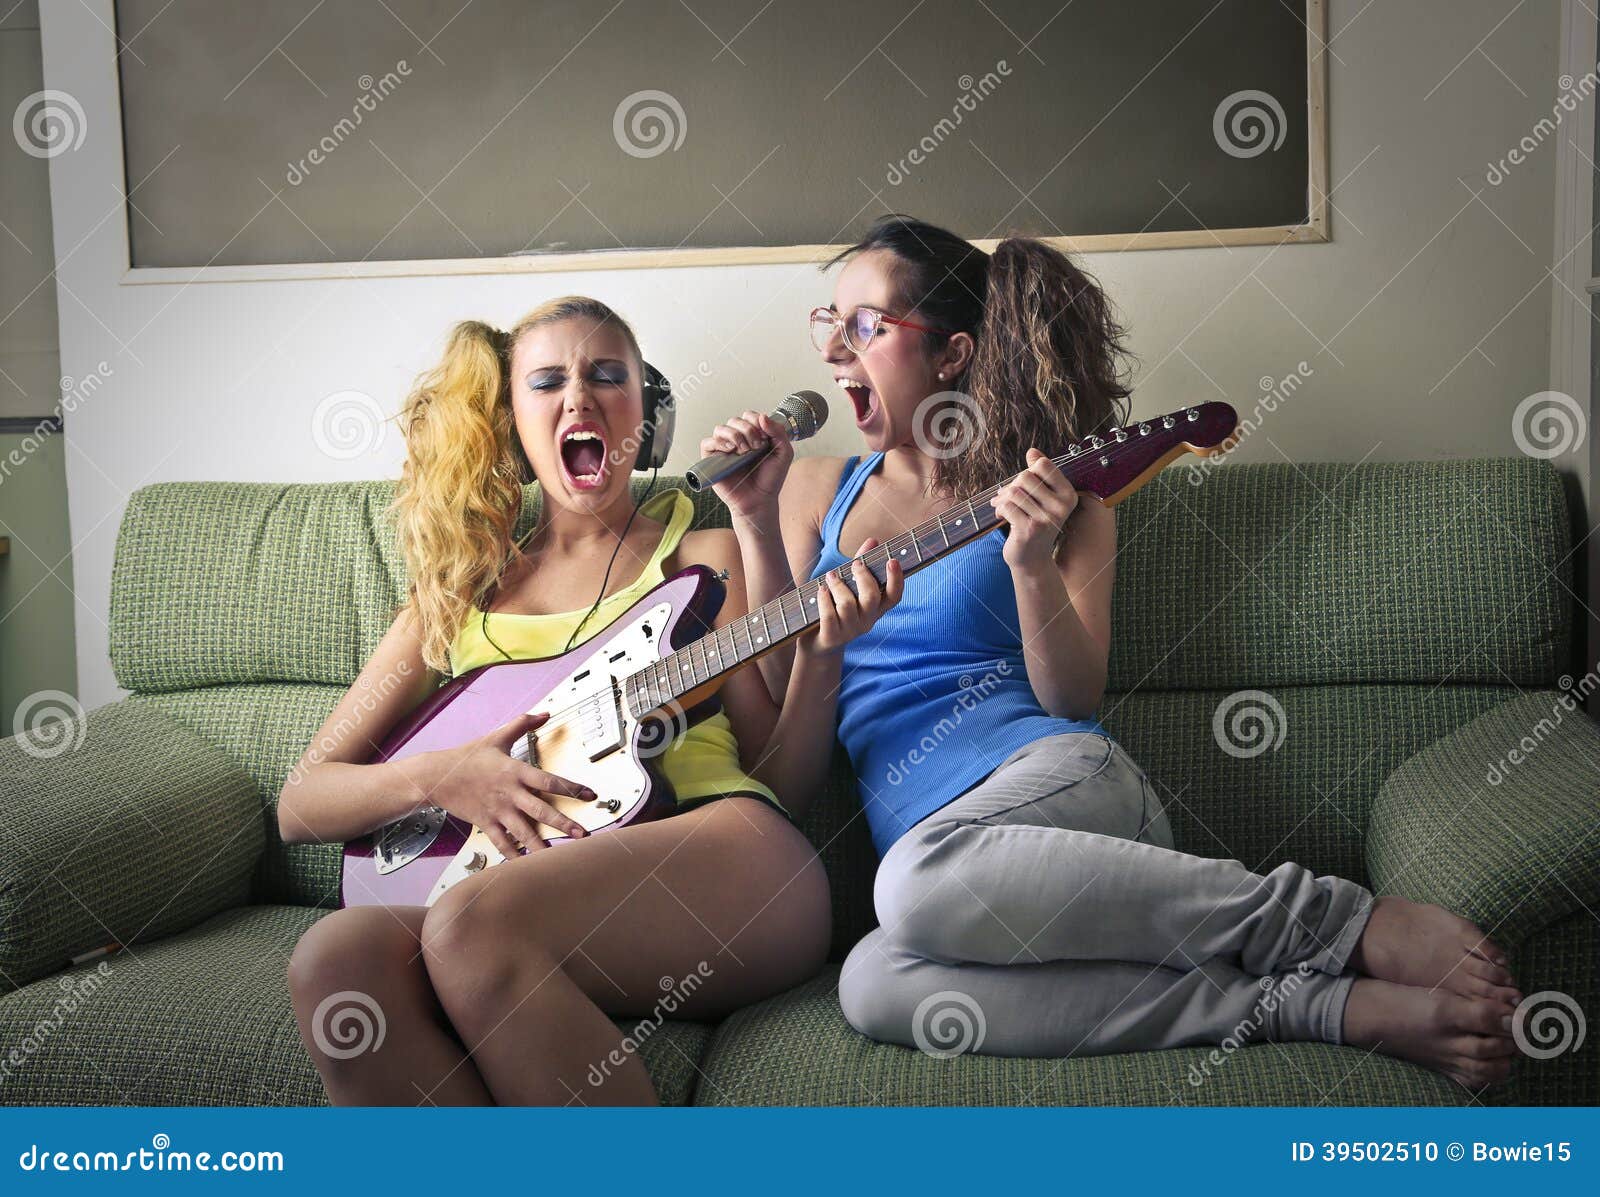 Другое пение. Поющая тетка. Одна играет другая поёт. Девушка поет друзьям. Подростки дома играют на гитаре и поют.